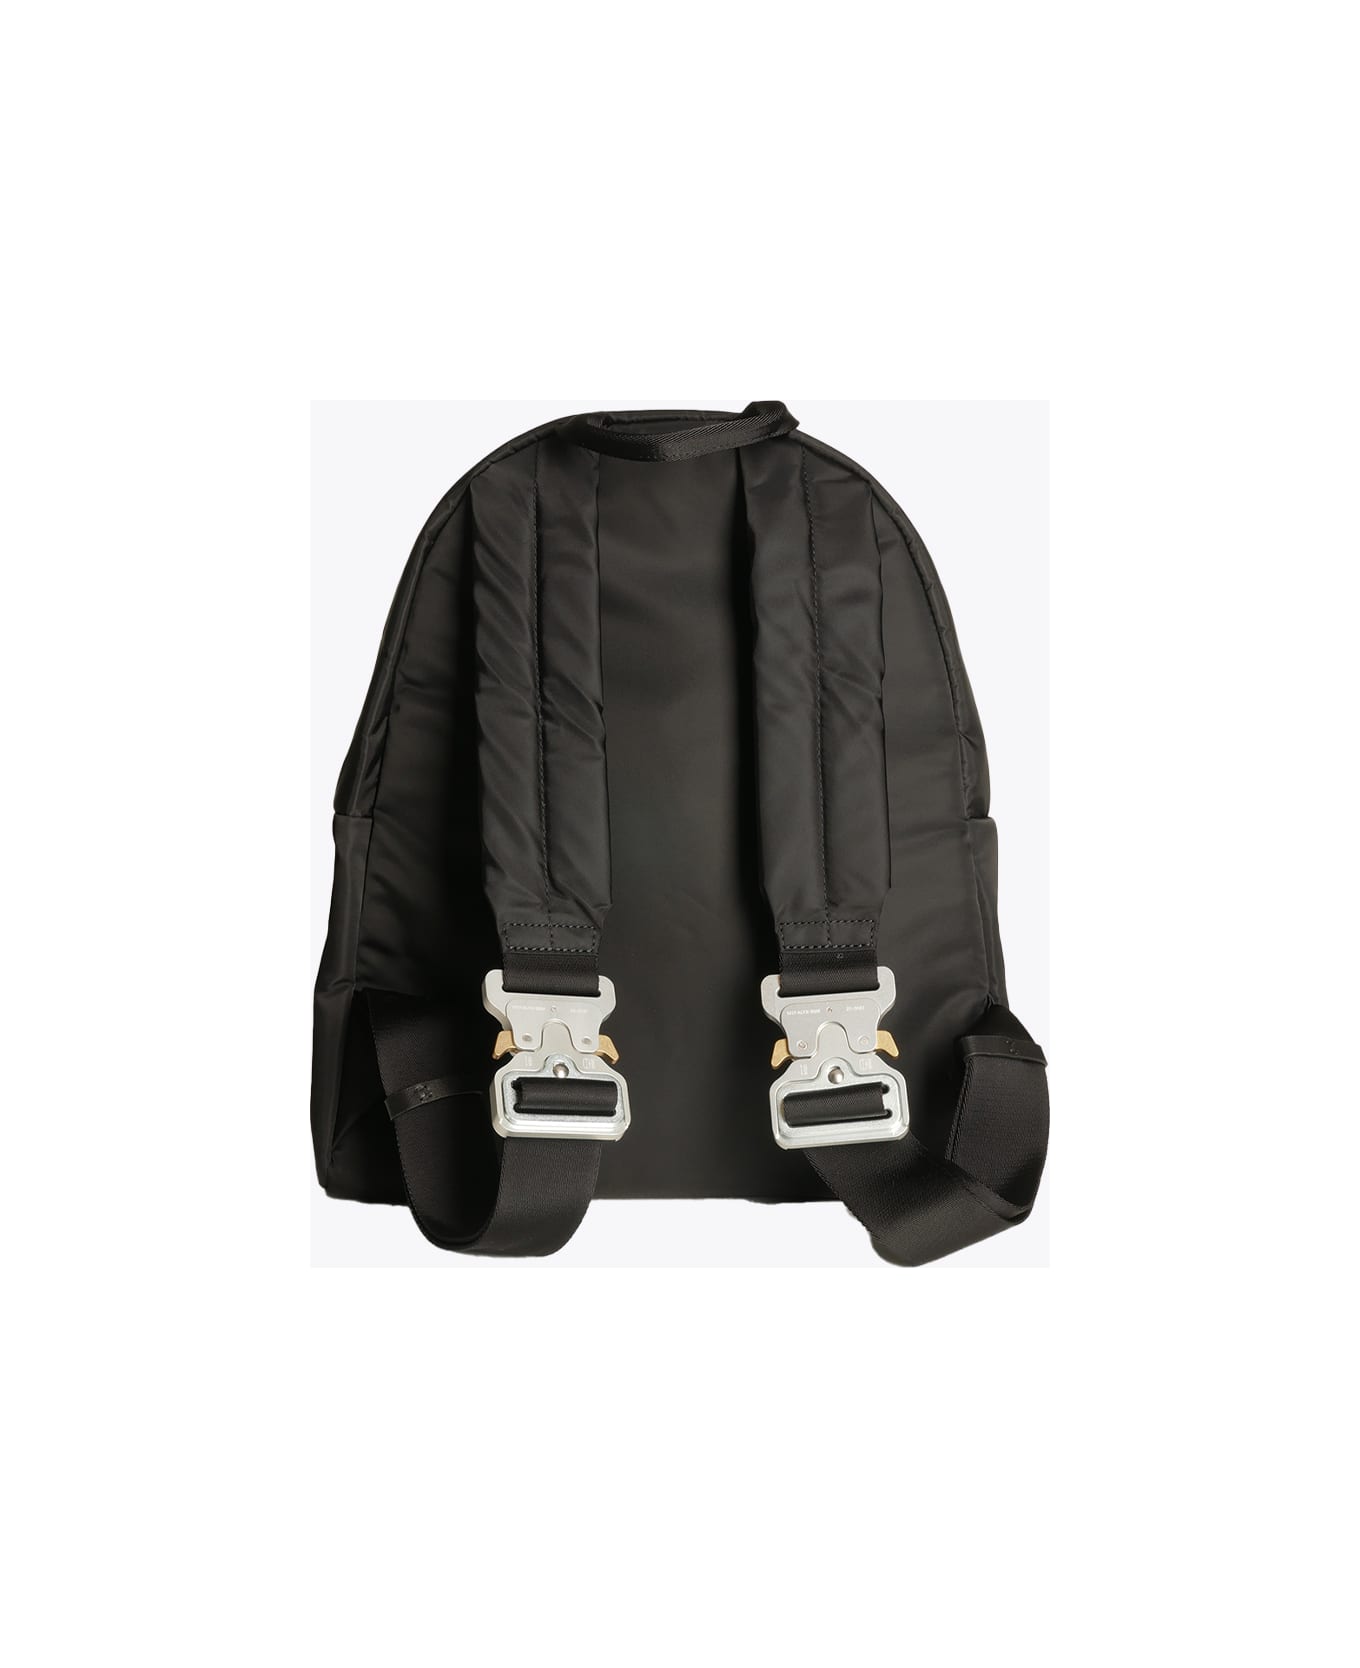 1017 ALYX 9SM Buckle Shoulder Straps Backpack Black nylon backpack - Buckle shoulder straps backpack - Nero